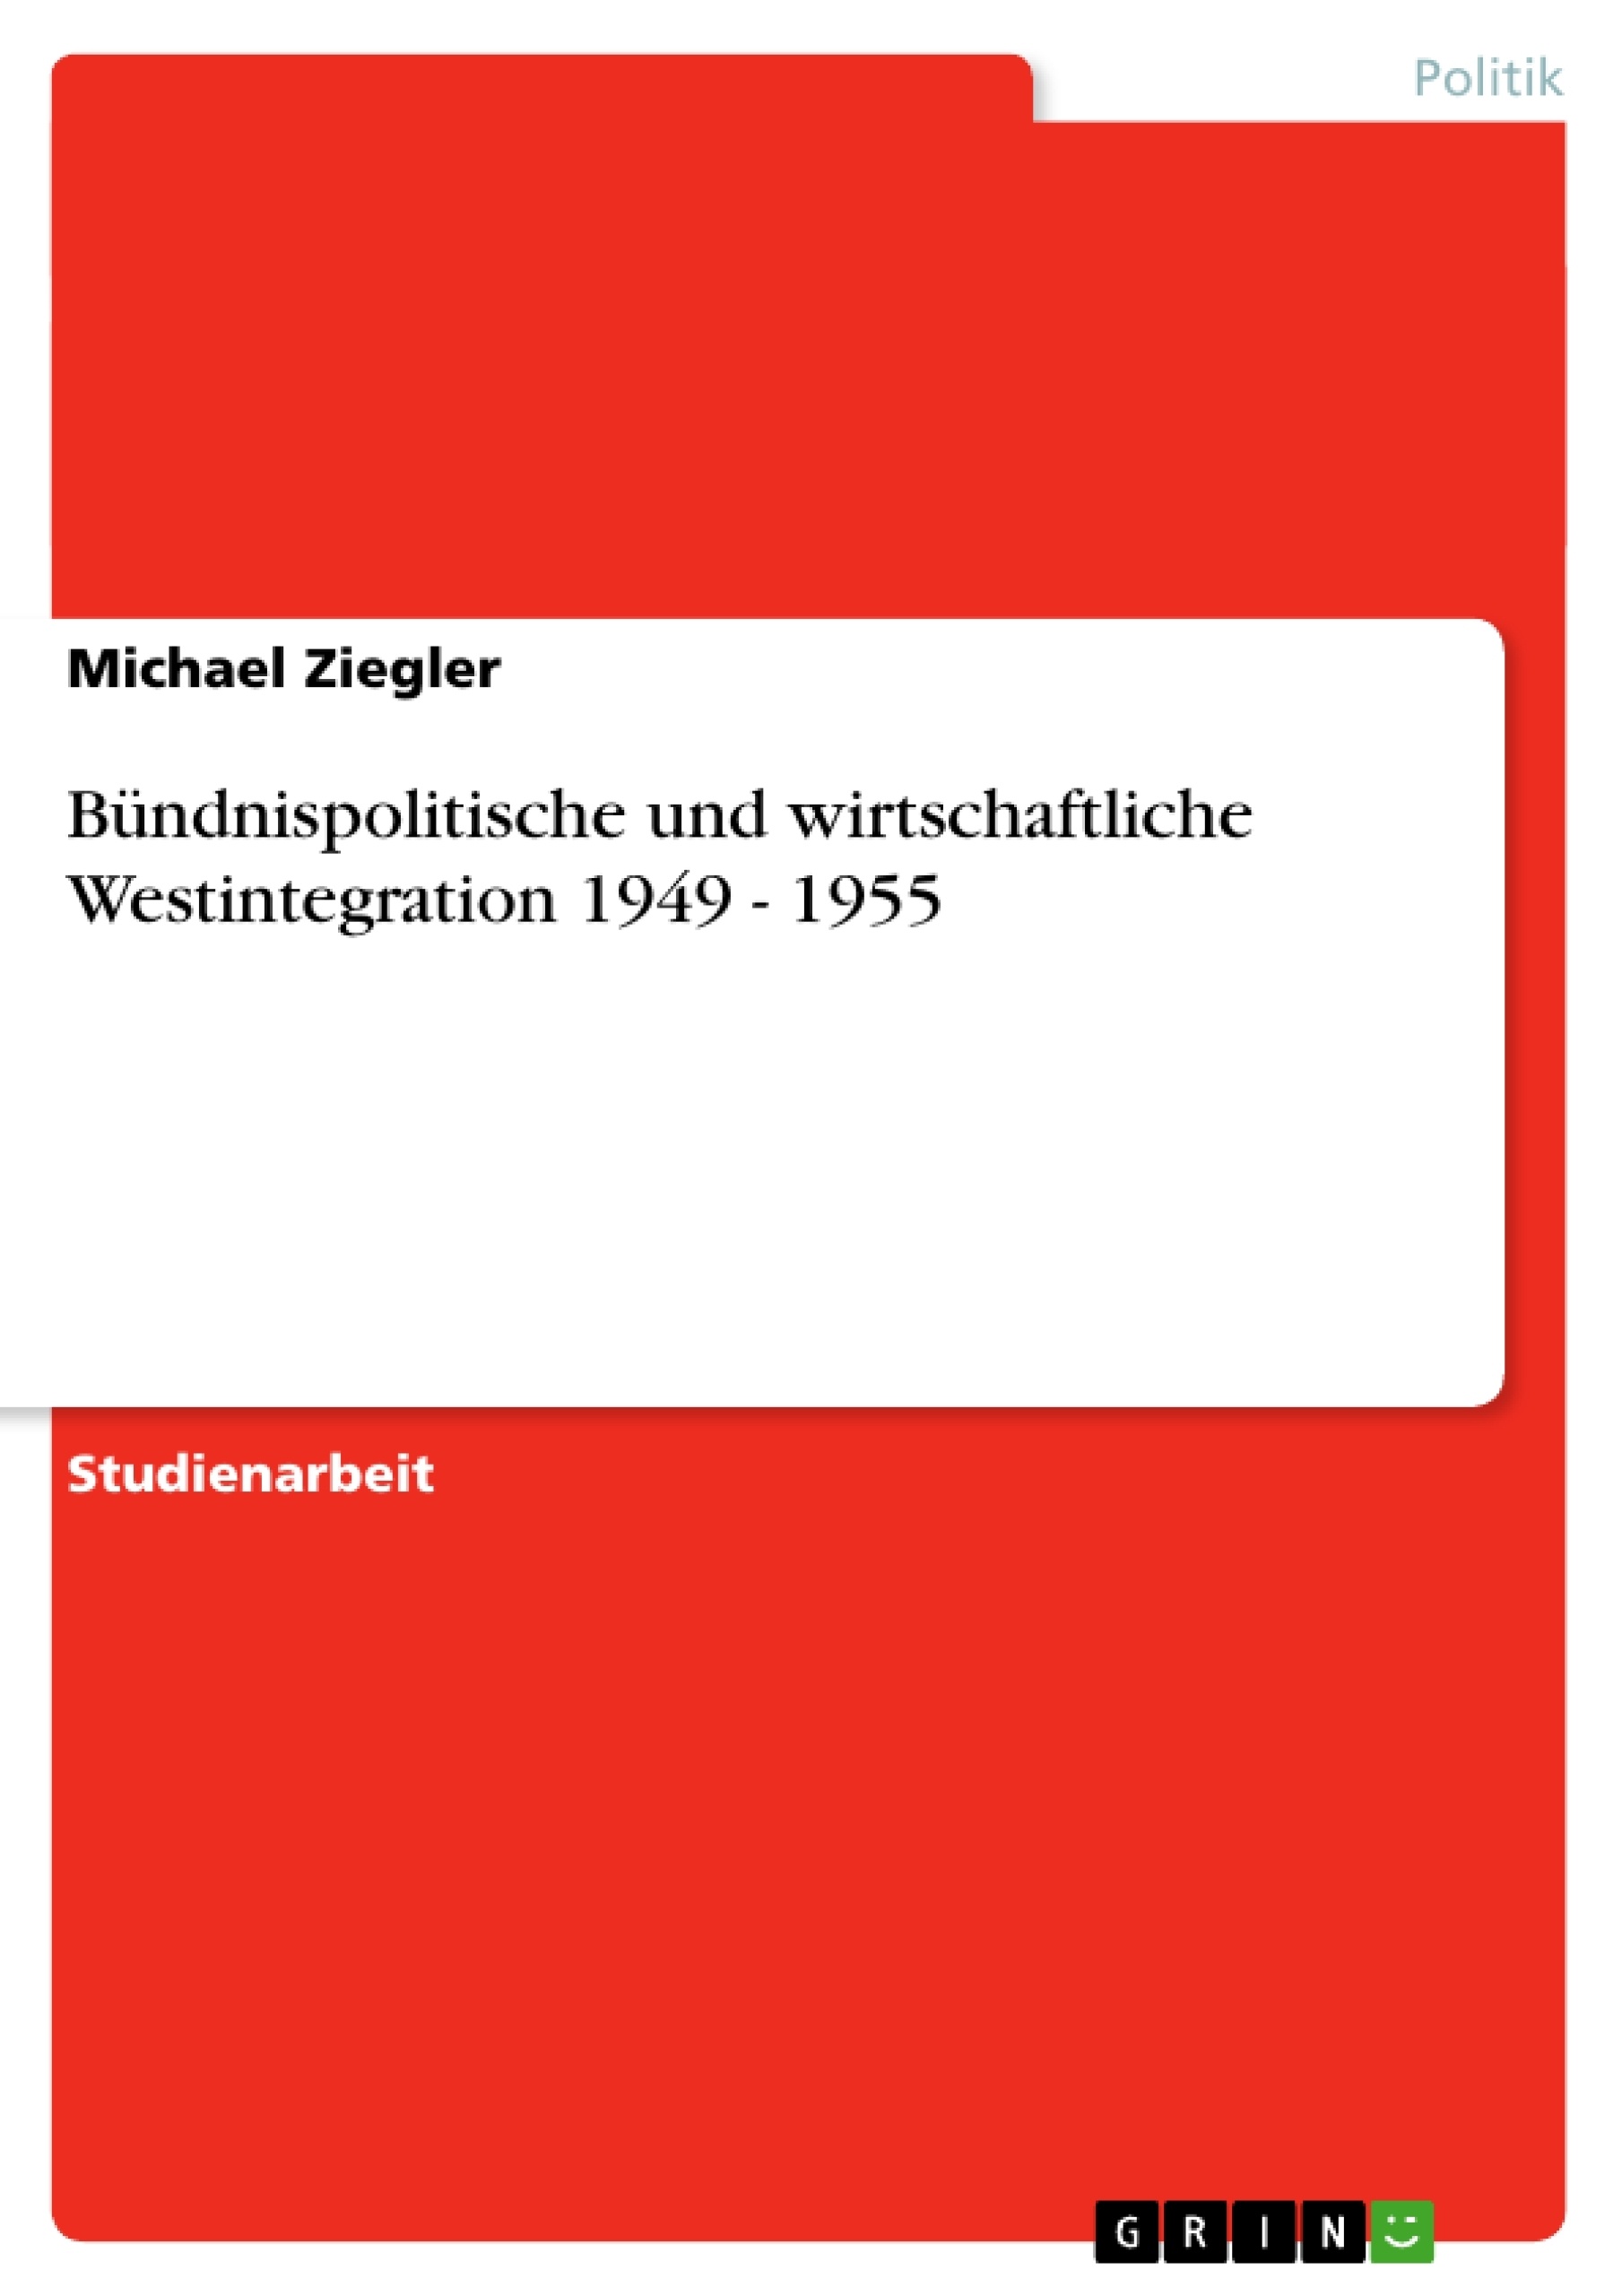 Titel: Bündnispolitische und wirtschaftliche Westintegration 1949 - 1955